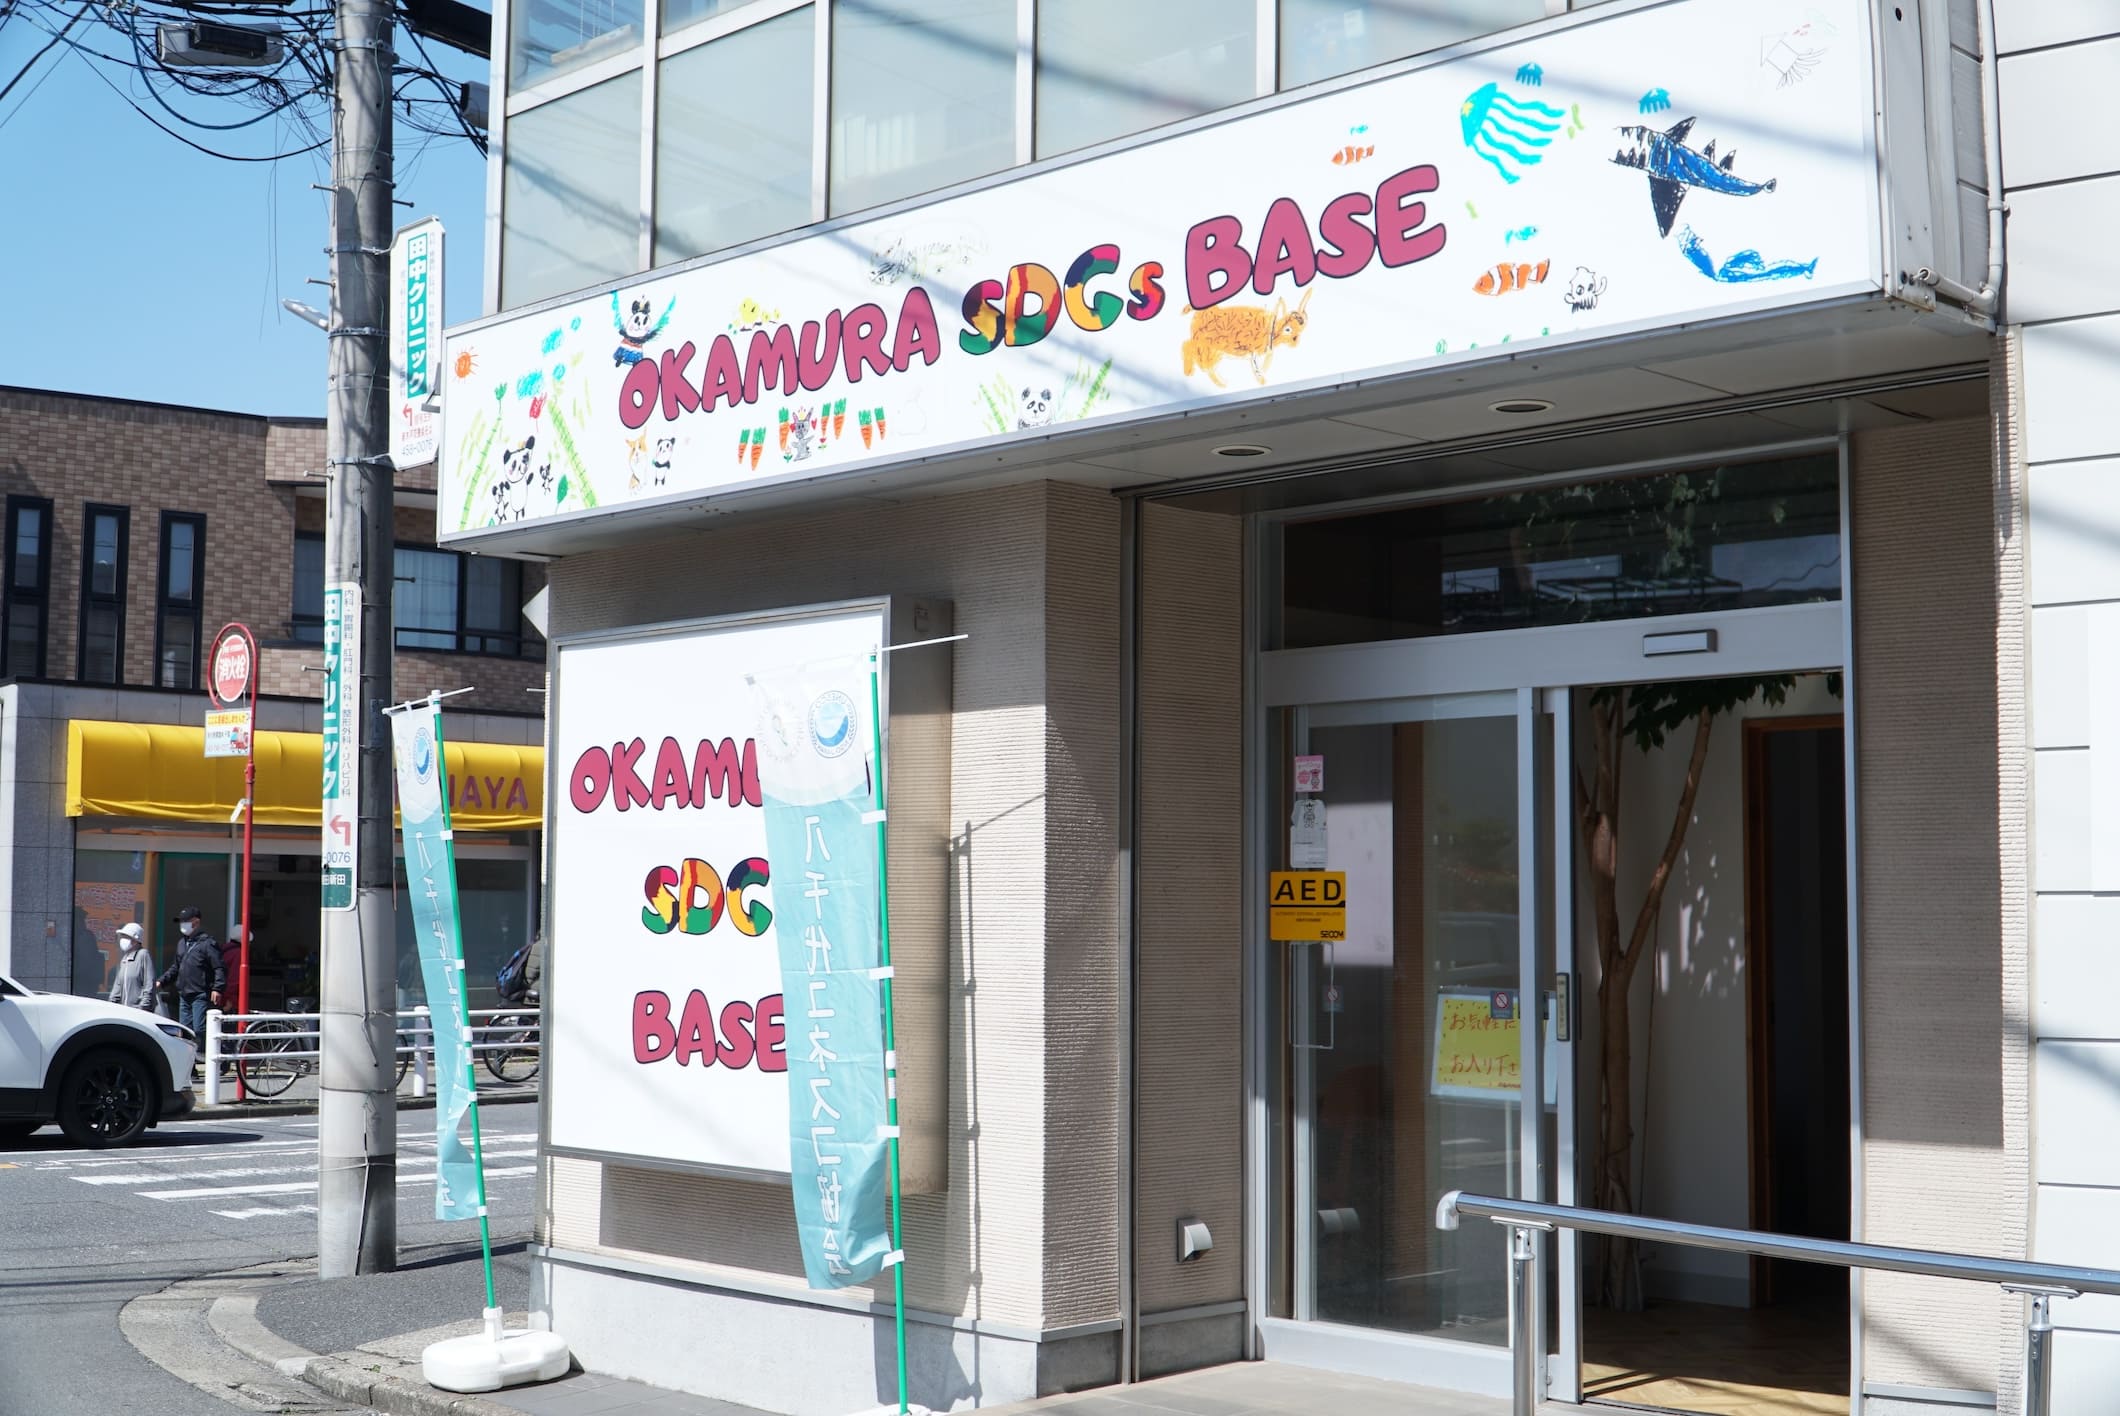 OKAMURA SDGs BASE